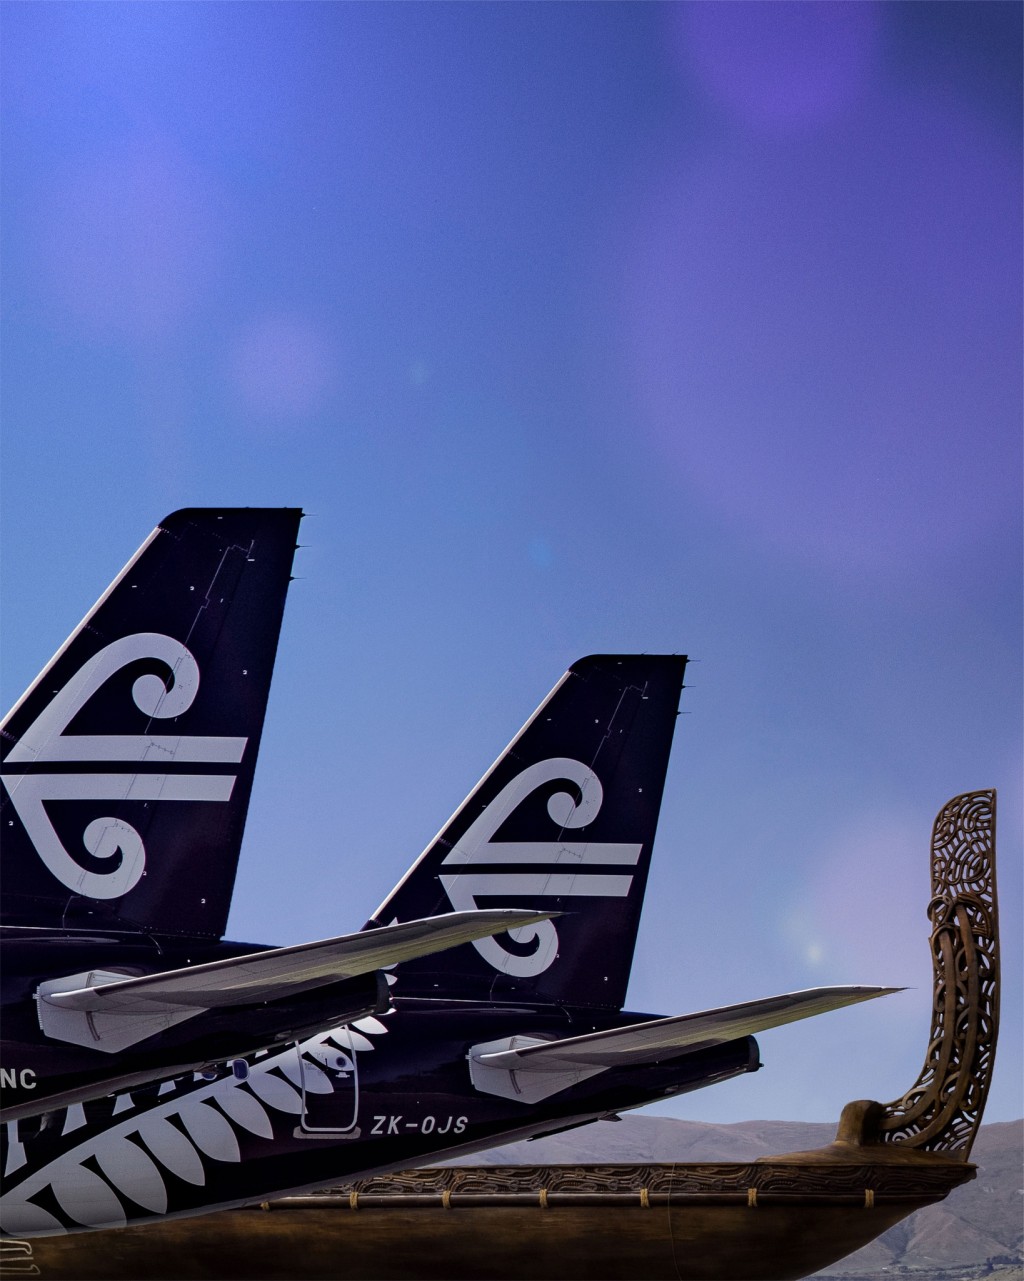 “舒眠舱”服务将在长机上提供。(Air New Zealand facebook)